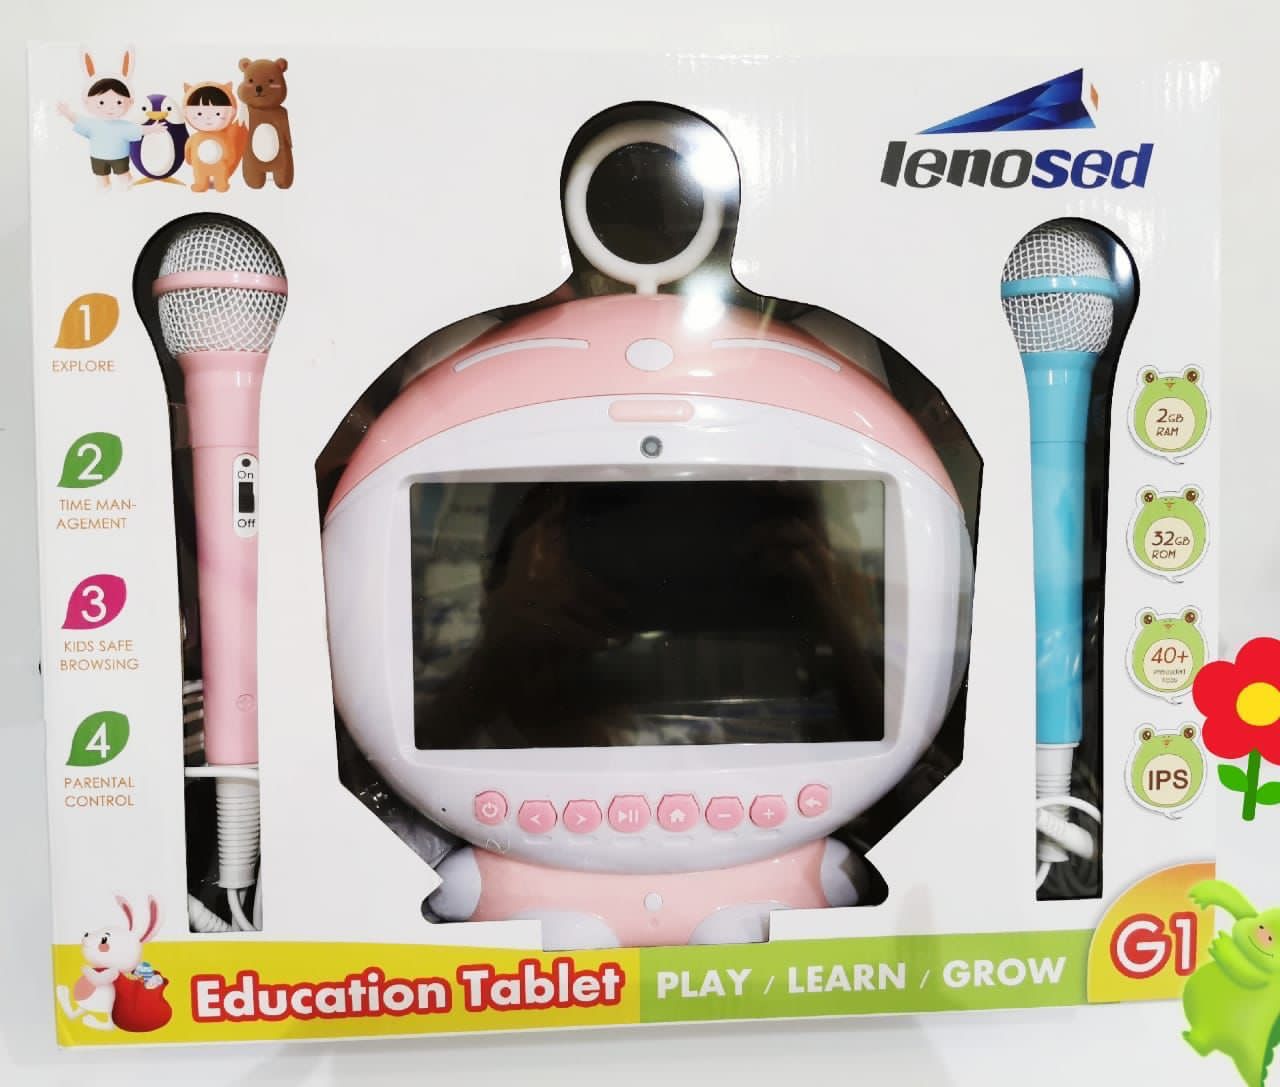 Tablette Educative pour Enfant De Marque Lenosed G1, Avec 2 Micro pour  Karaoke, Mémoire 16GB, Wi MN00391 - Sodishop